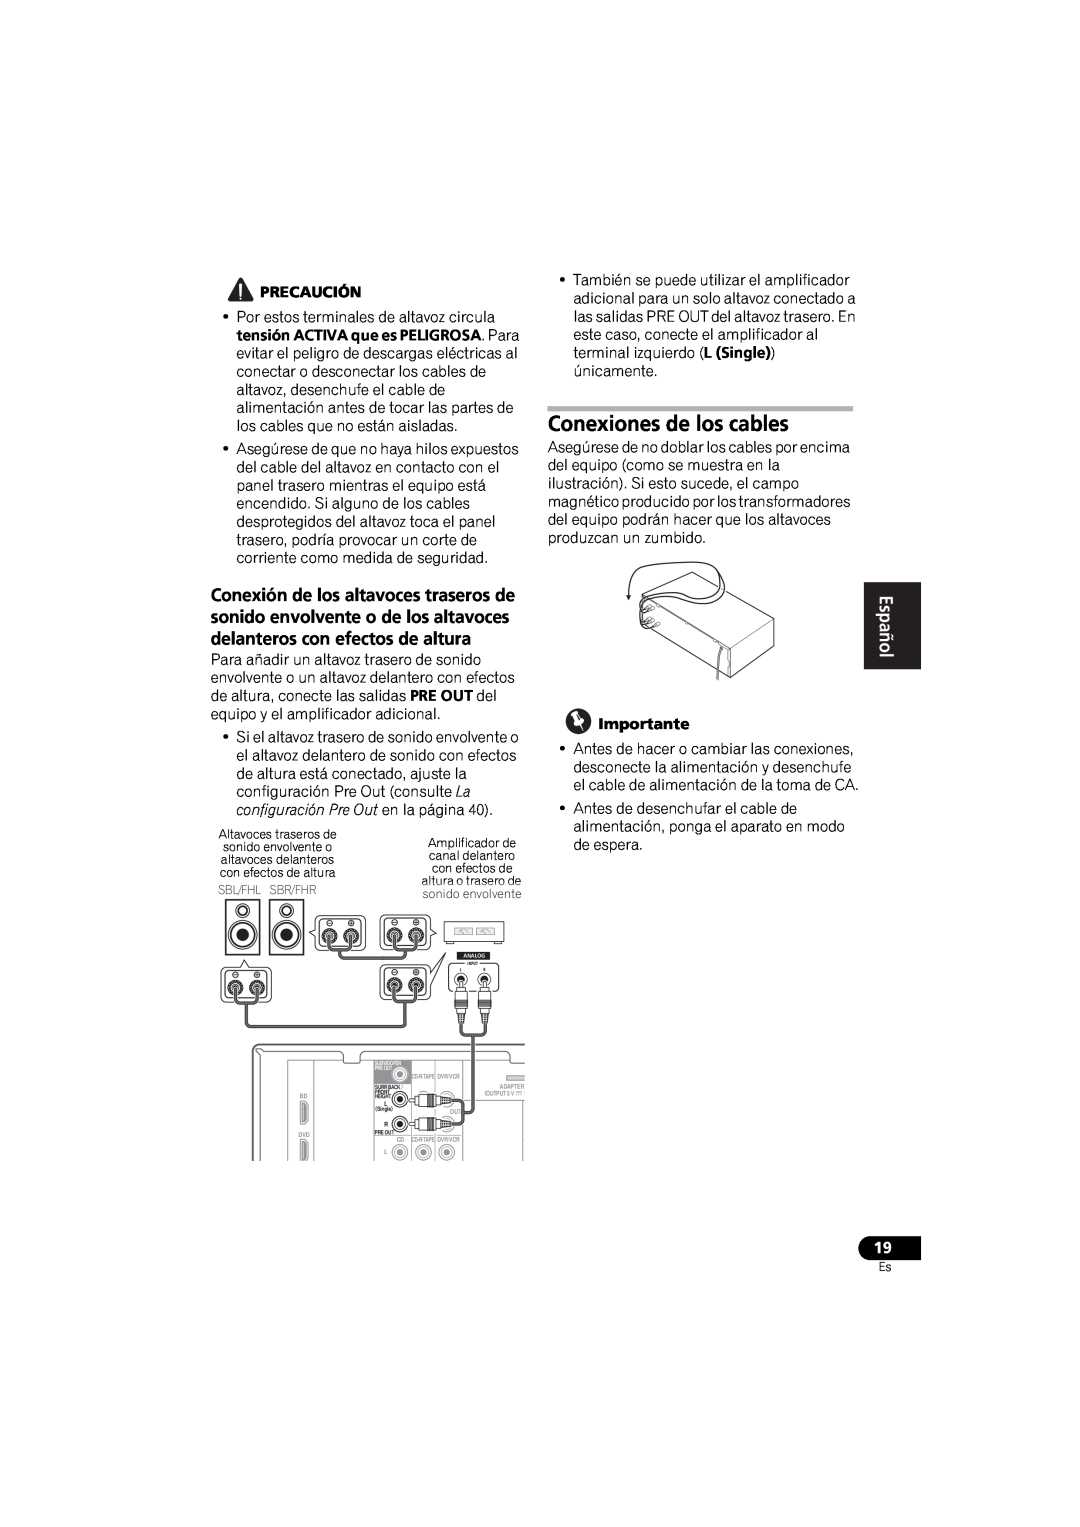 Pioneer VSX-520 manual Conexiones de los cables, English, Español 